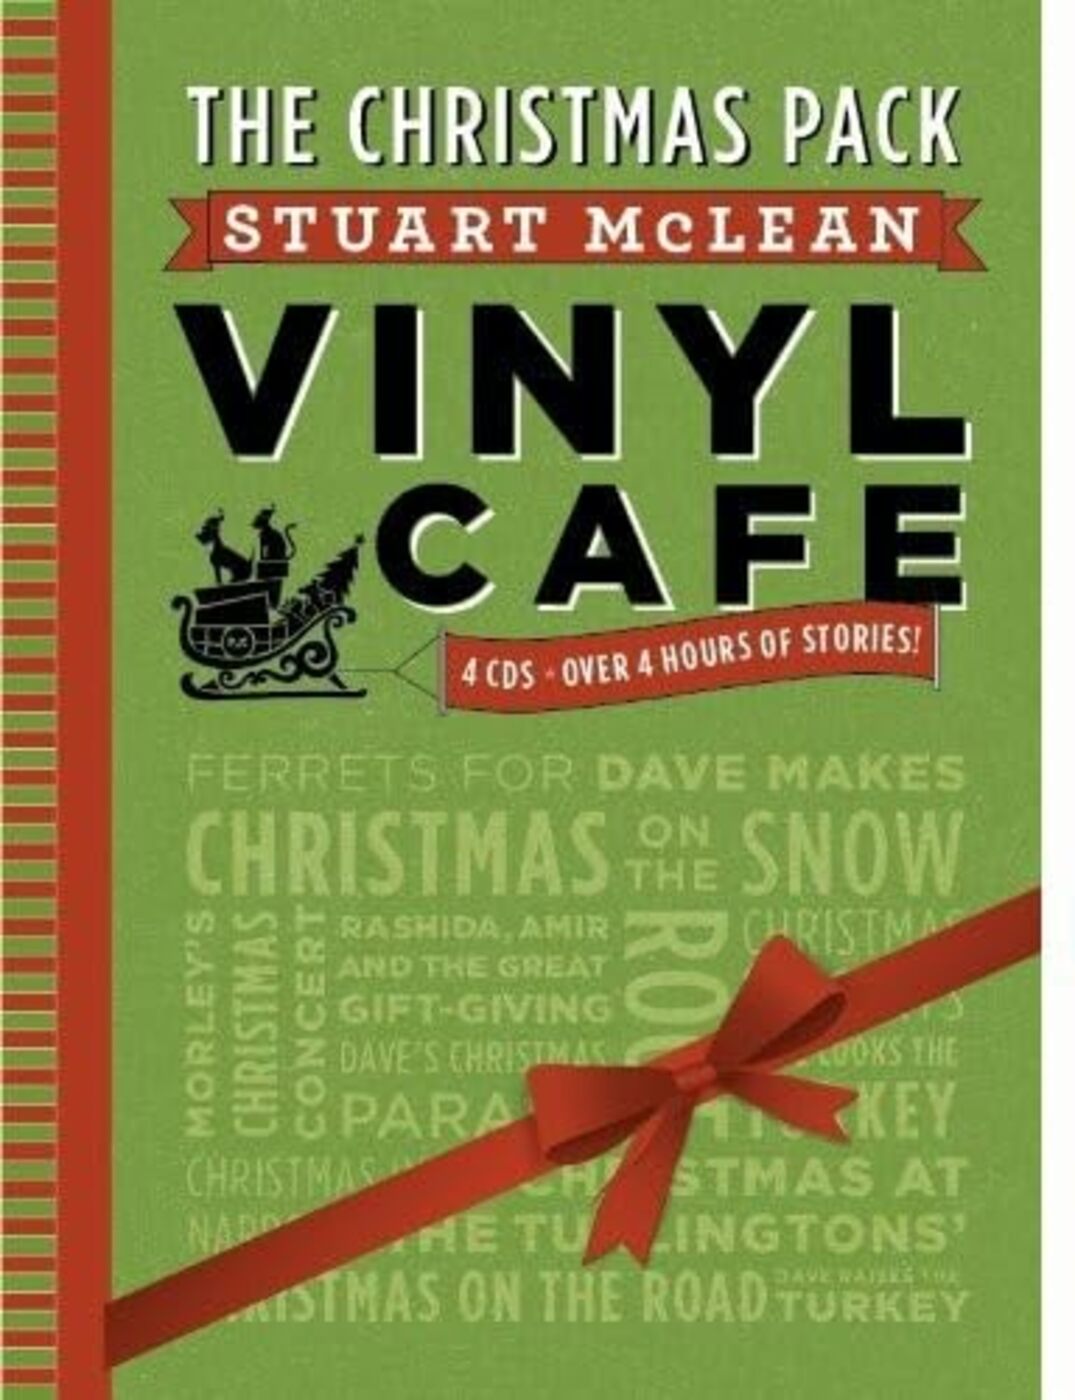 Stuart McLean | Vinyl Cafe Christmas Pack | CD